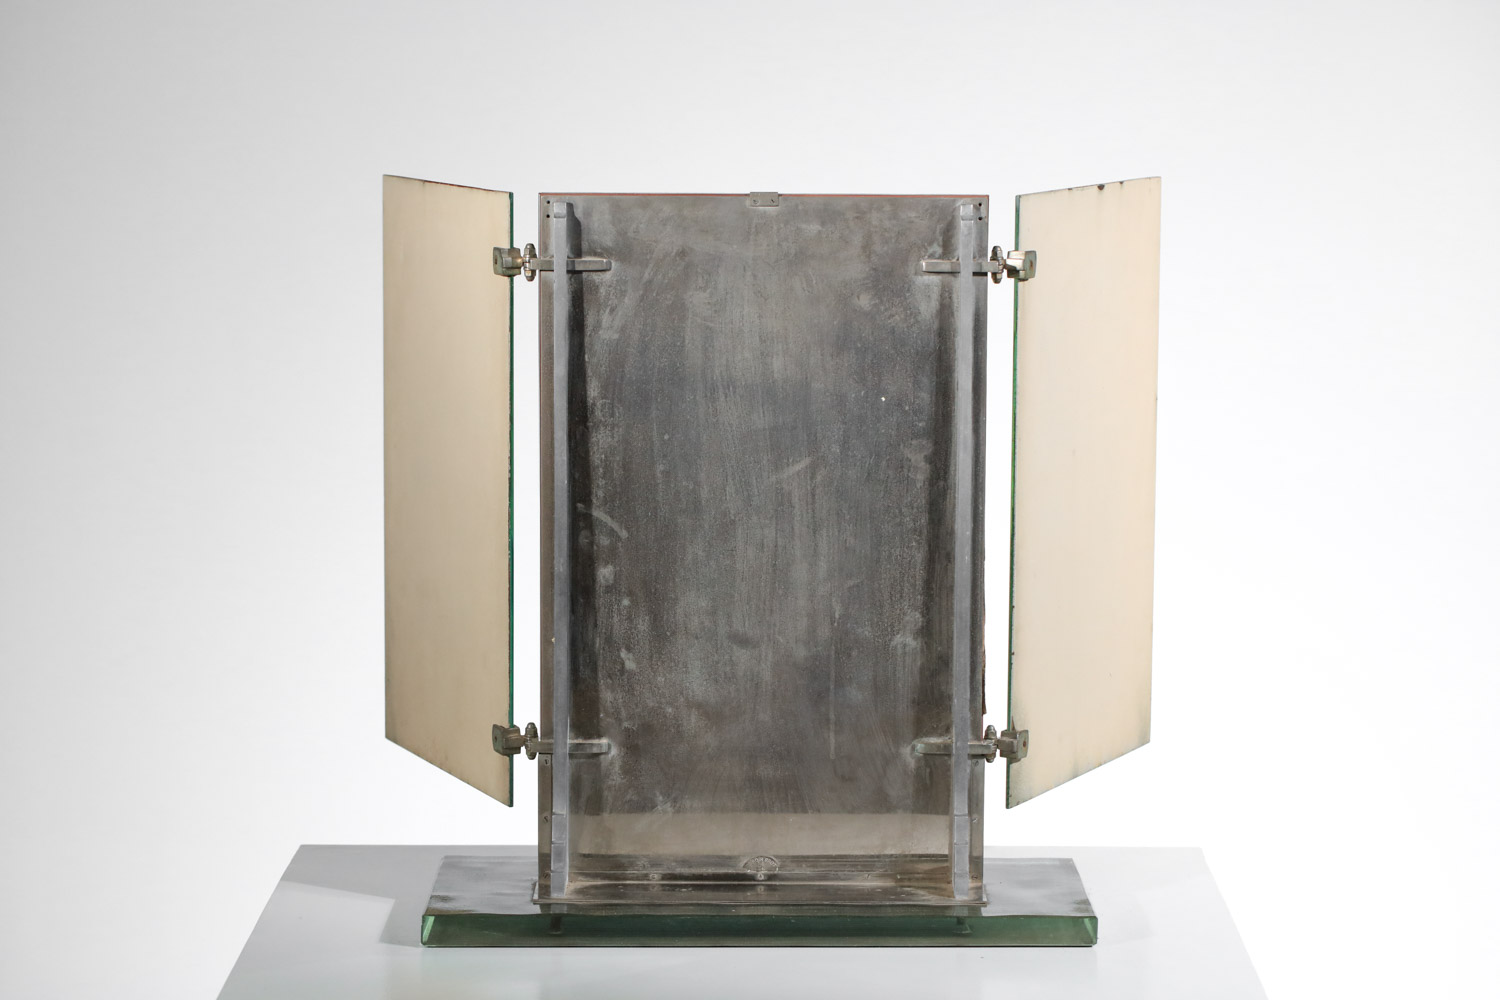 miroir triptyque Brot dalle de verre années 40 / 50 art déco moderniste - G385